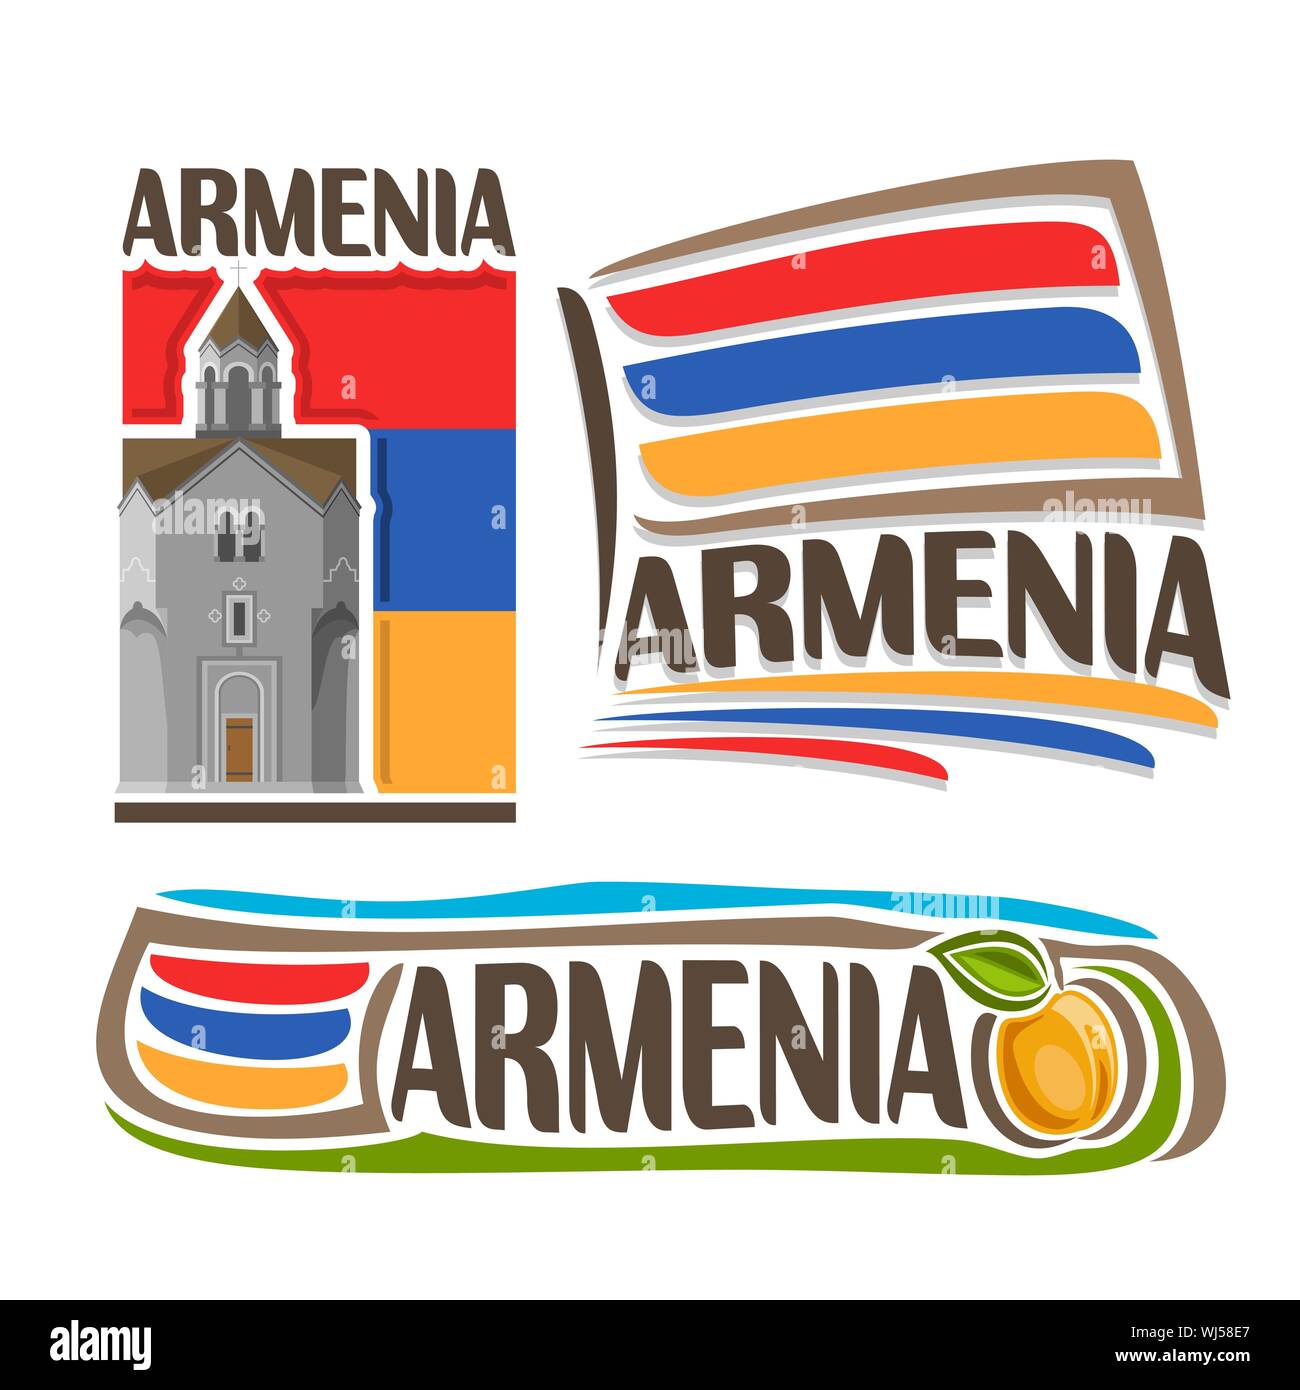 Il logo del vettore per l'Armenia architettura, 3 illustrazioni isolate: Haghpat monastero su sfondo di stato nazionale bandiera, simbolo della Repubblica Armenia e Illustrazione Vettoriale